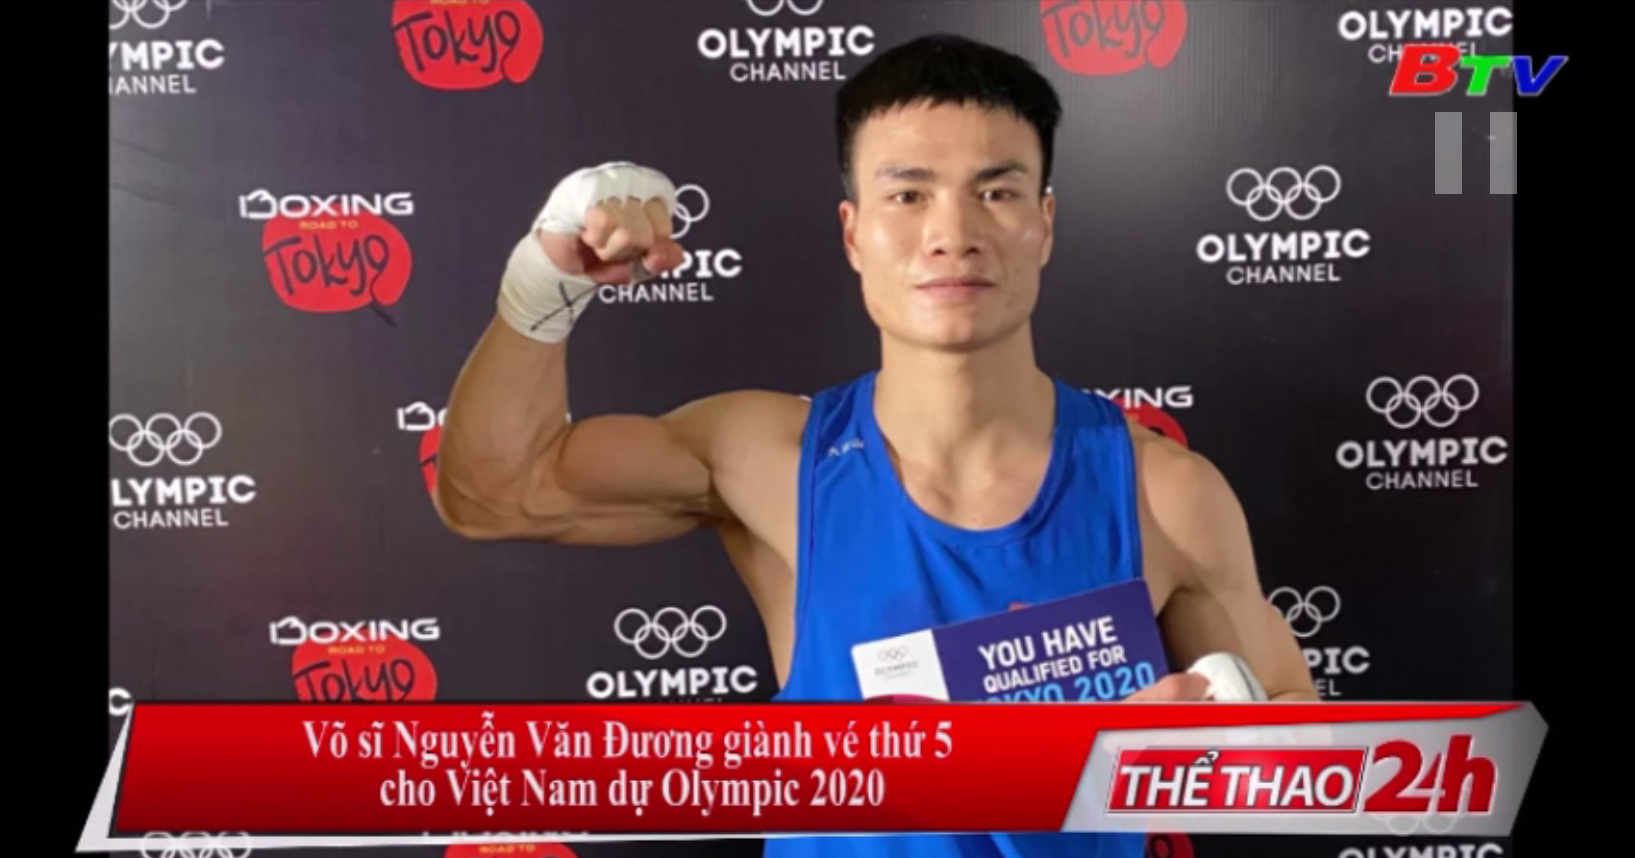 Võ sĩ Nguyễn Văn Đương giành vé thứ 5 cho Việt Nam dự Olympic 2020